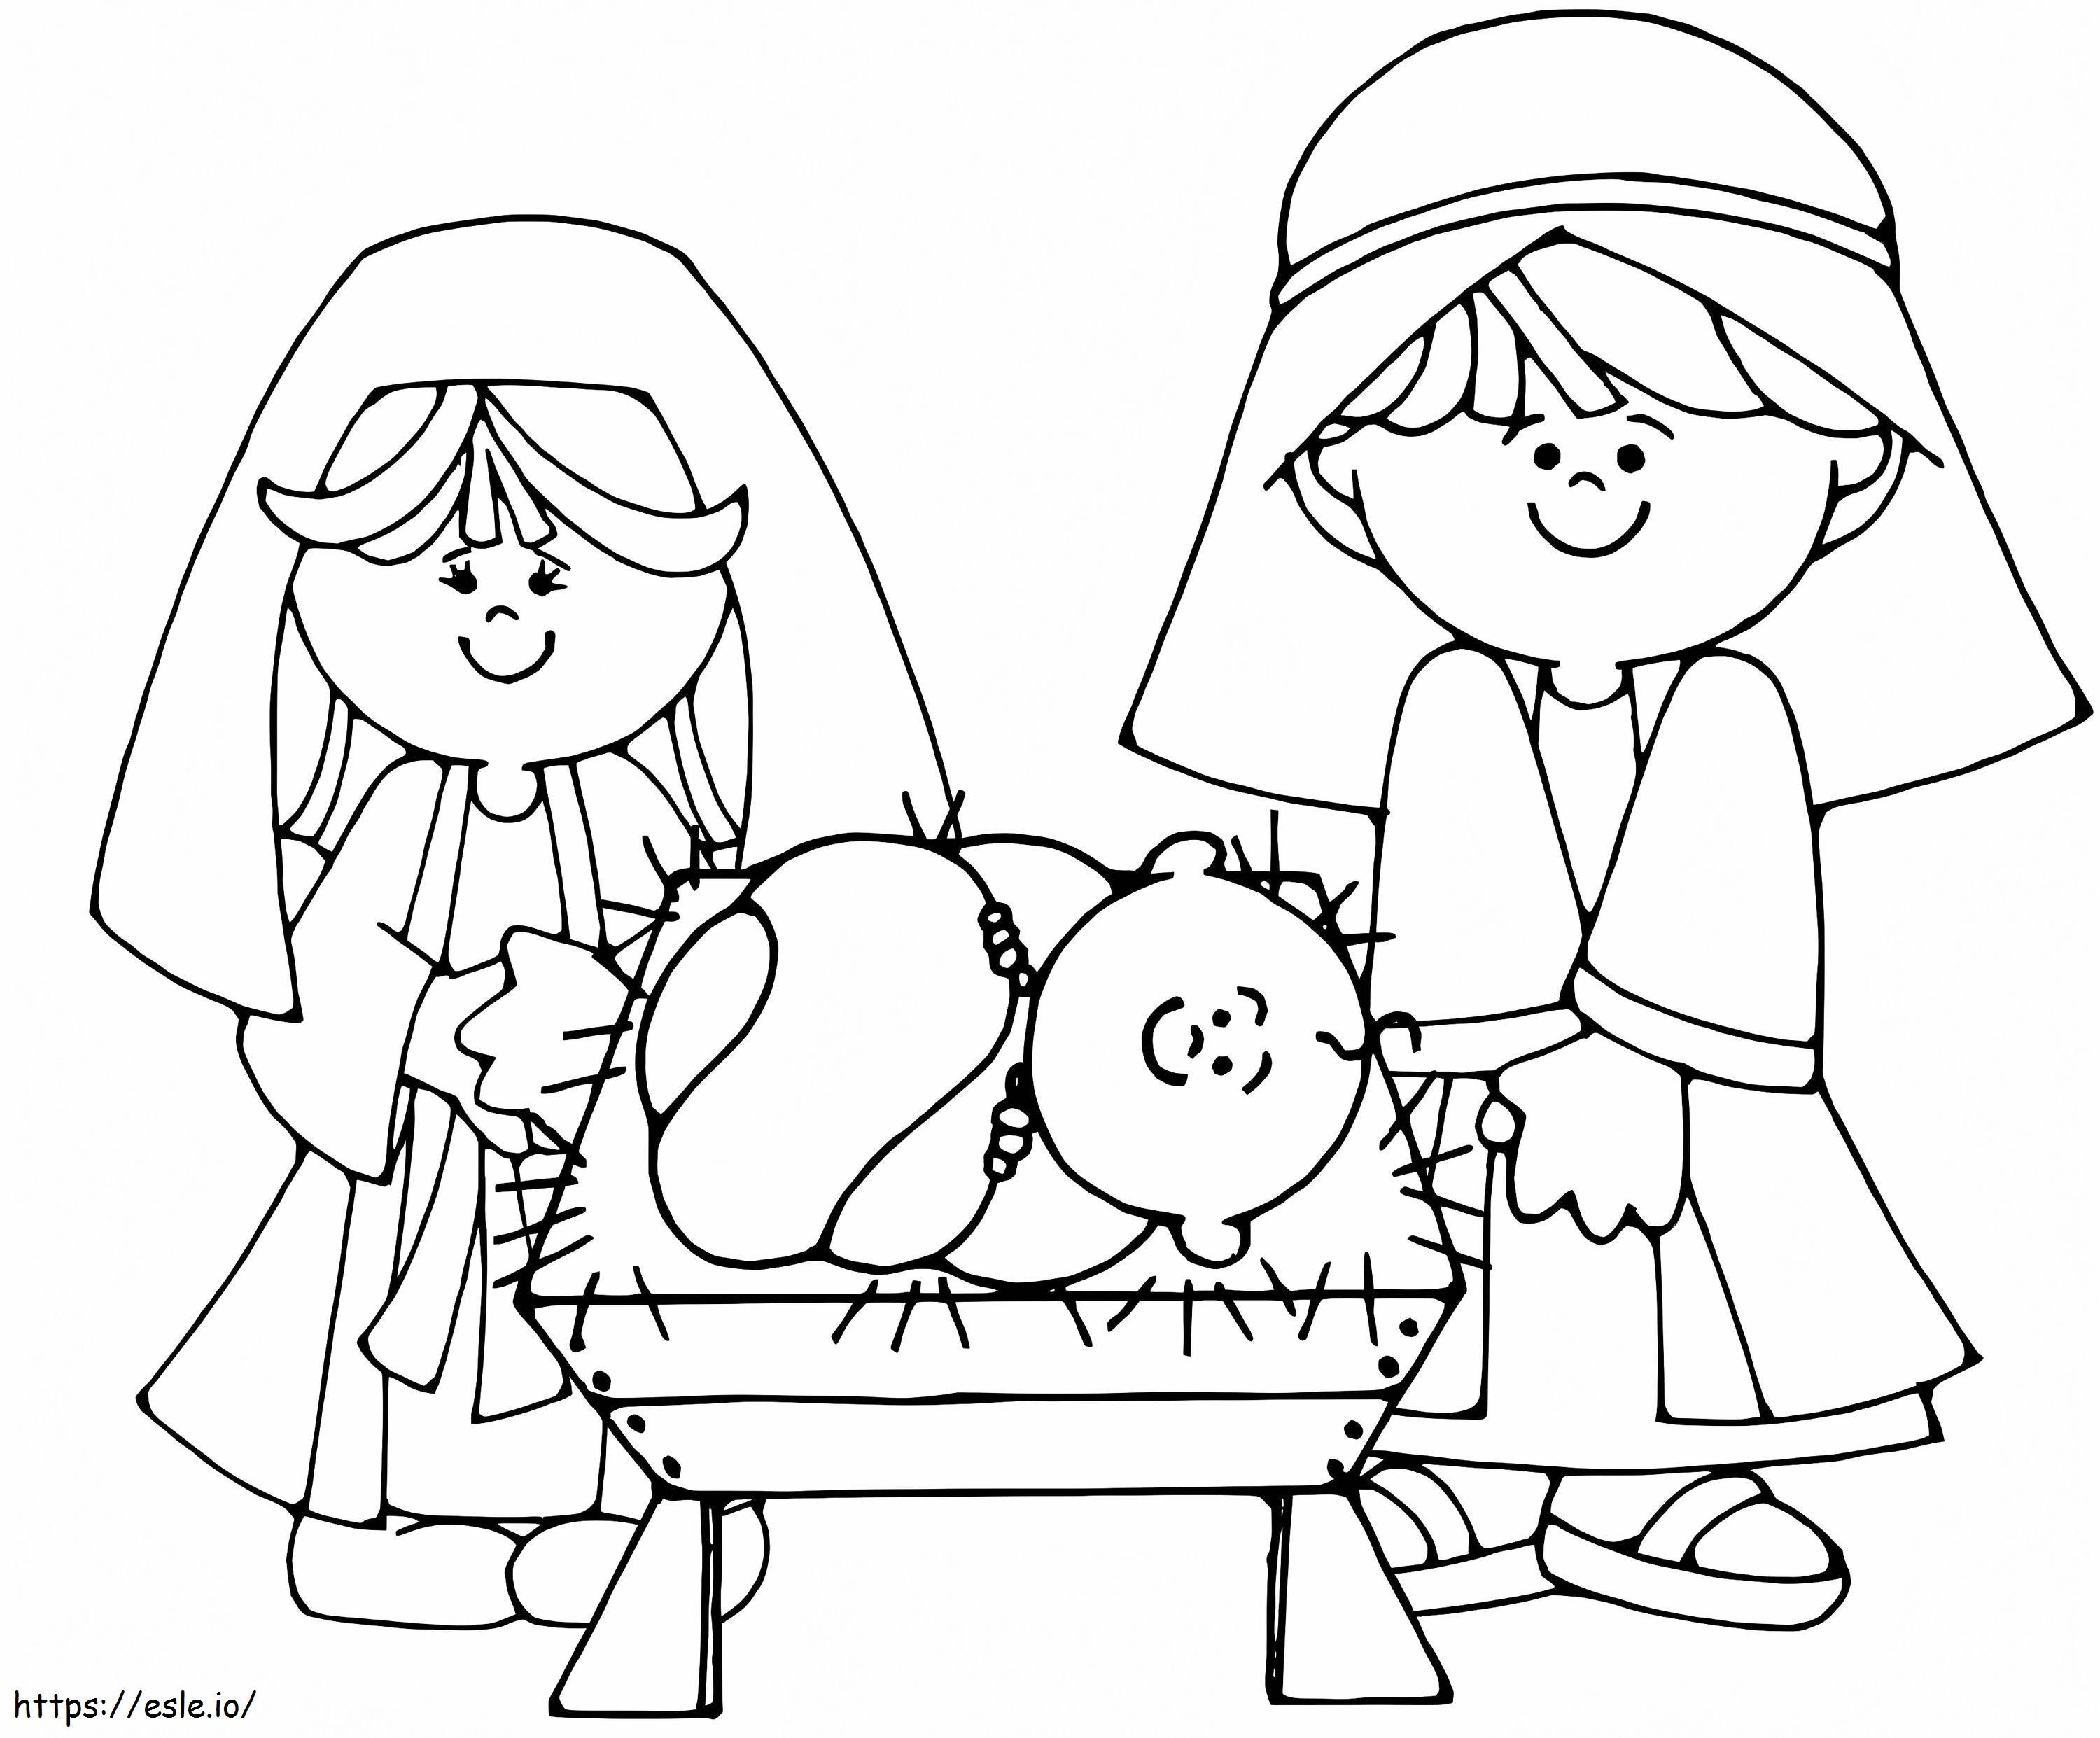 Natividade Menino Jesus para colorir